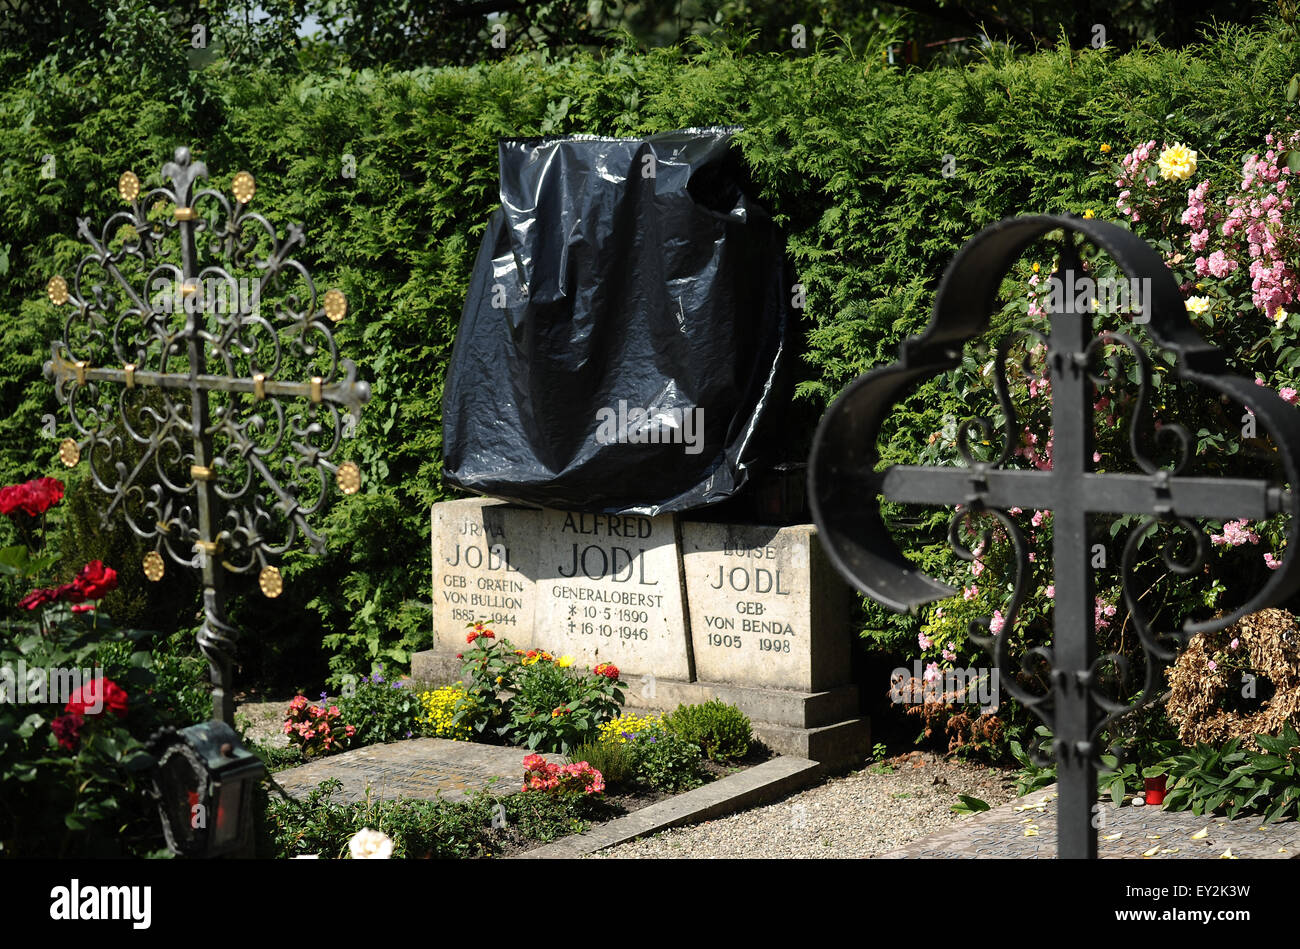 La tombe du colonel-général Alfred Jodl a été en partie recouverte d'une bâche au cimetière sur l'île Fraueninsel sur le lac de Chiemsee, Allemagne, 03 juillet 2015. Agissant comme chef des opérations du personnel du Commandement général des Forces armées (Oberkommando der Wehrmacht) de 1944, pendant la Seconde Guerre mondiale, il a joué un rôle de premier plan dans la conception d'opérations militaires allemandes. Pendant le procès de Nuremberg, il a été déclaré coupable en 1946, condamné à mort et pendu comme un criminel de guerre le 16 octobre de la même année. Photo : Angelika Warmuth/dpa Banque D'Images